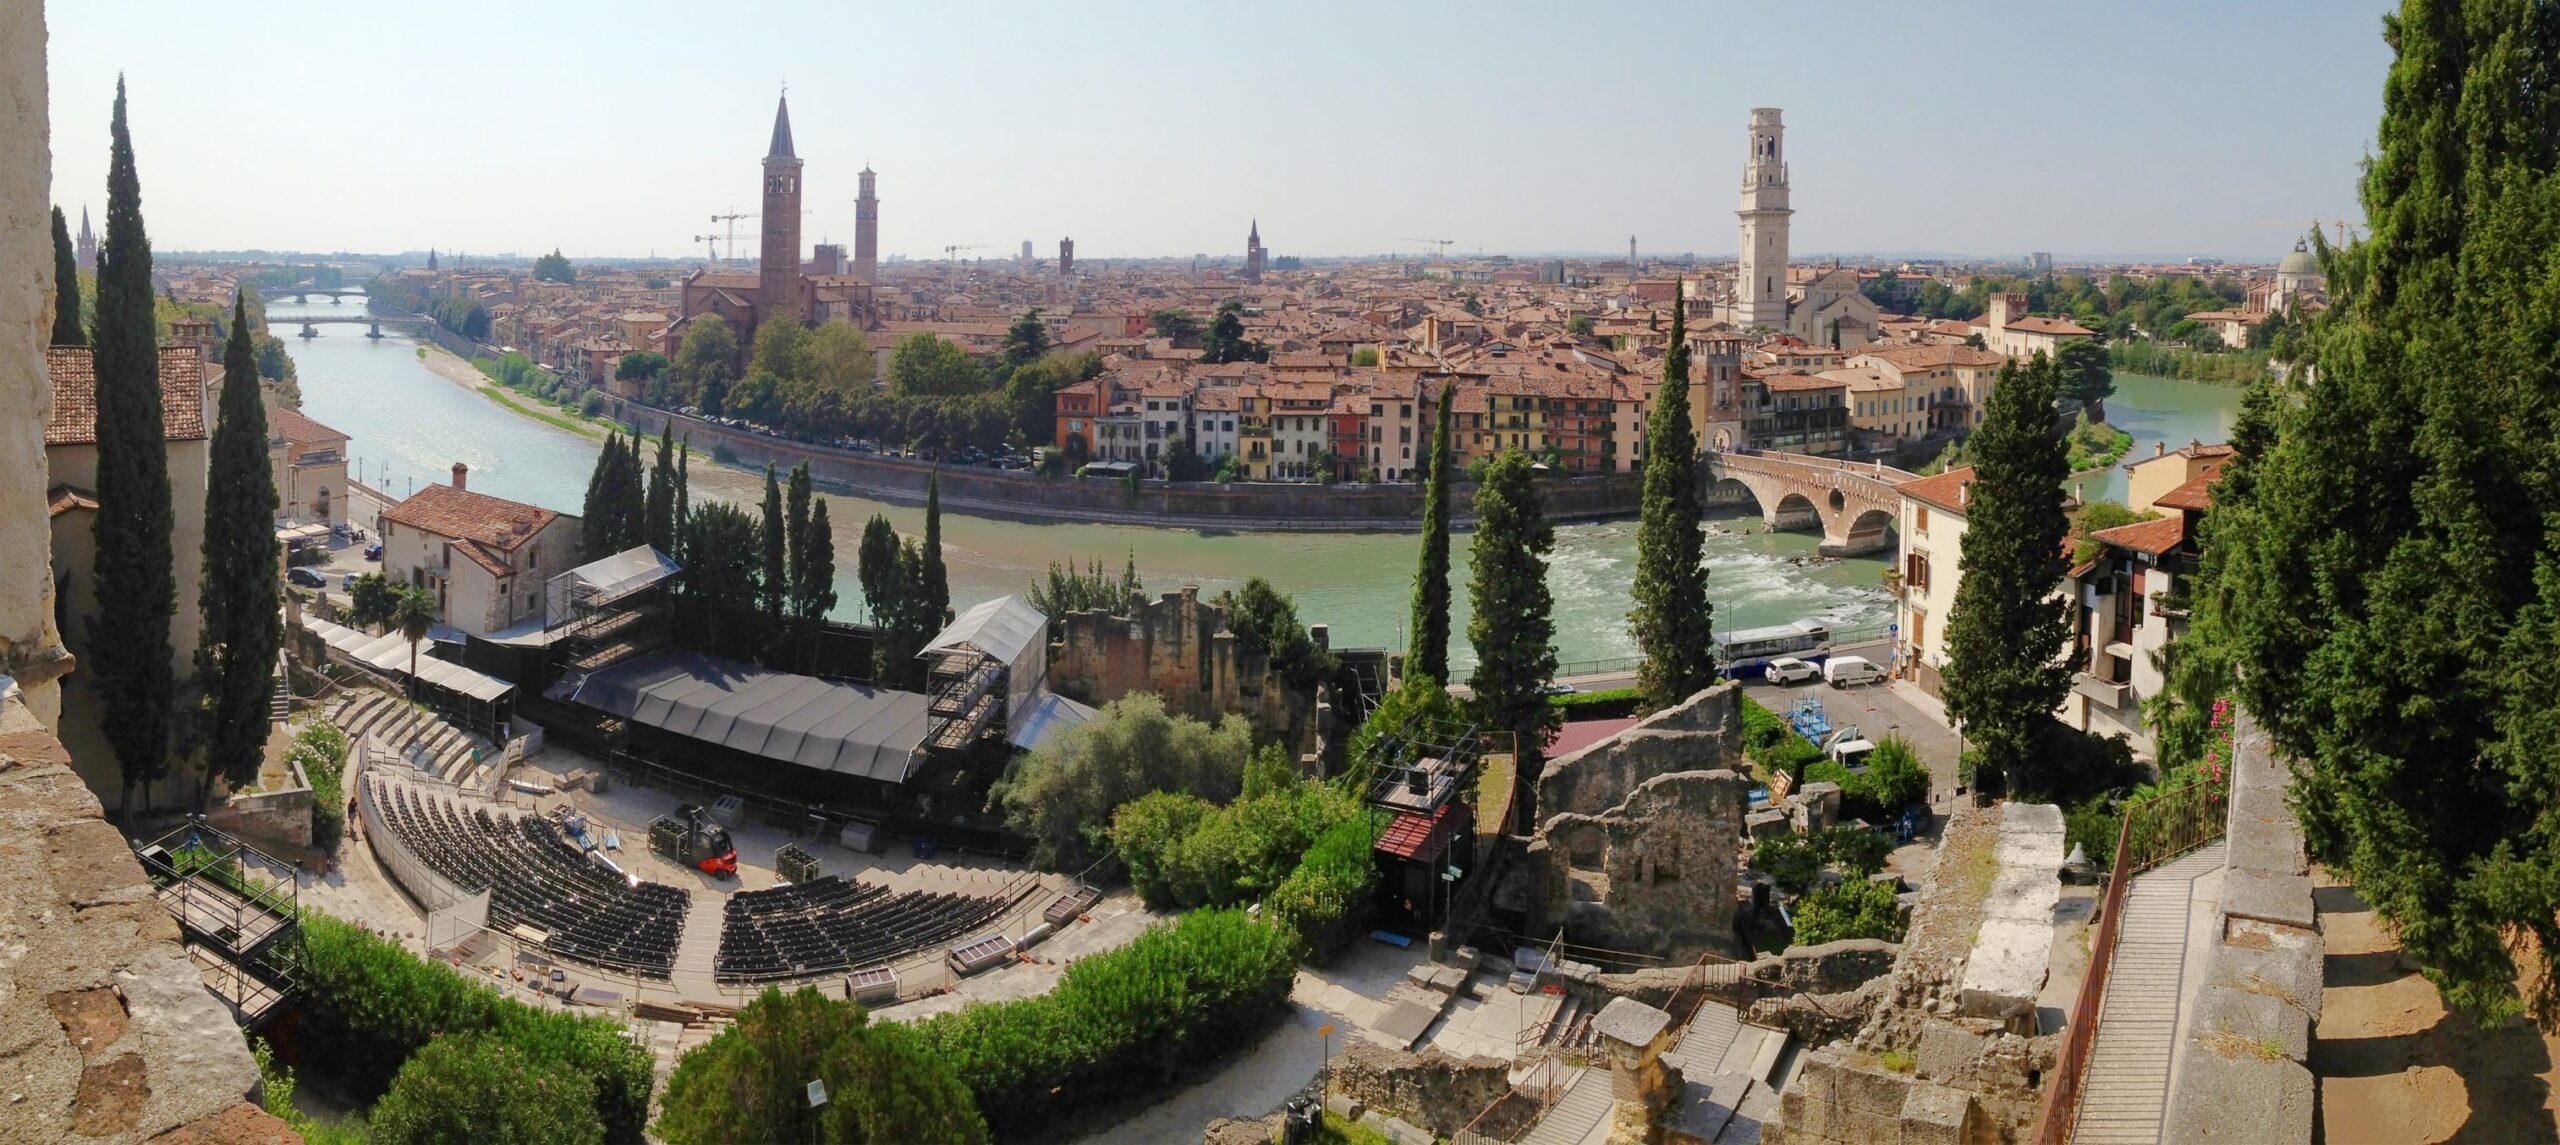 Ecosistema Urbano, Verona guadagna una posizione. Migliora nelle piantumazioni, Pm10 e riduzione ozono